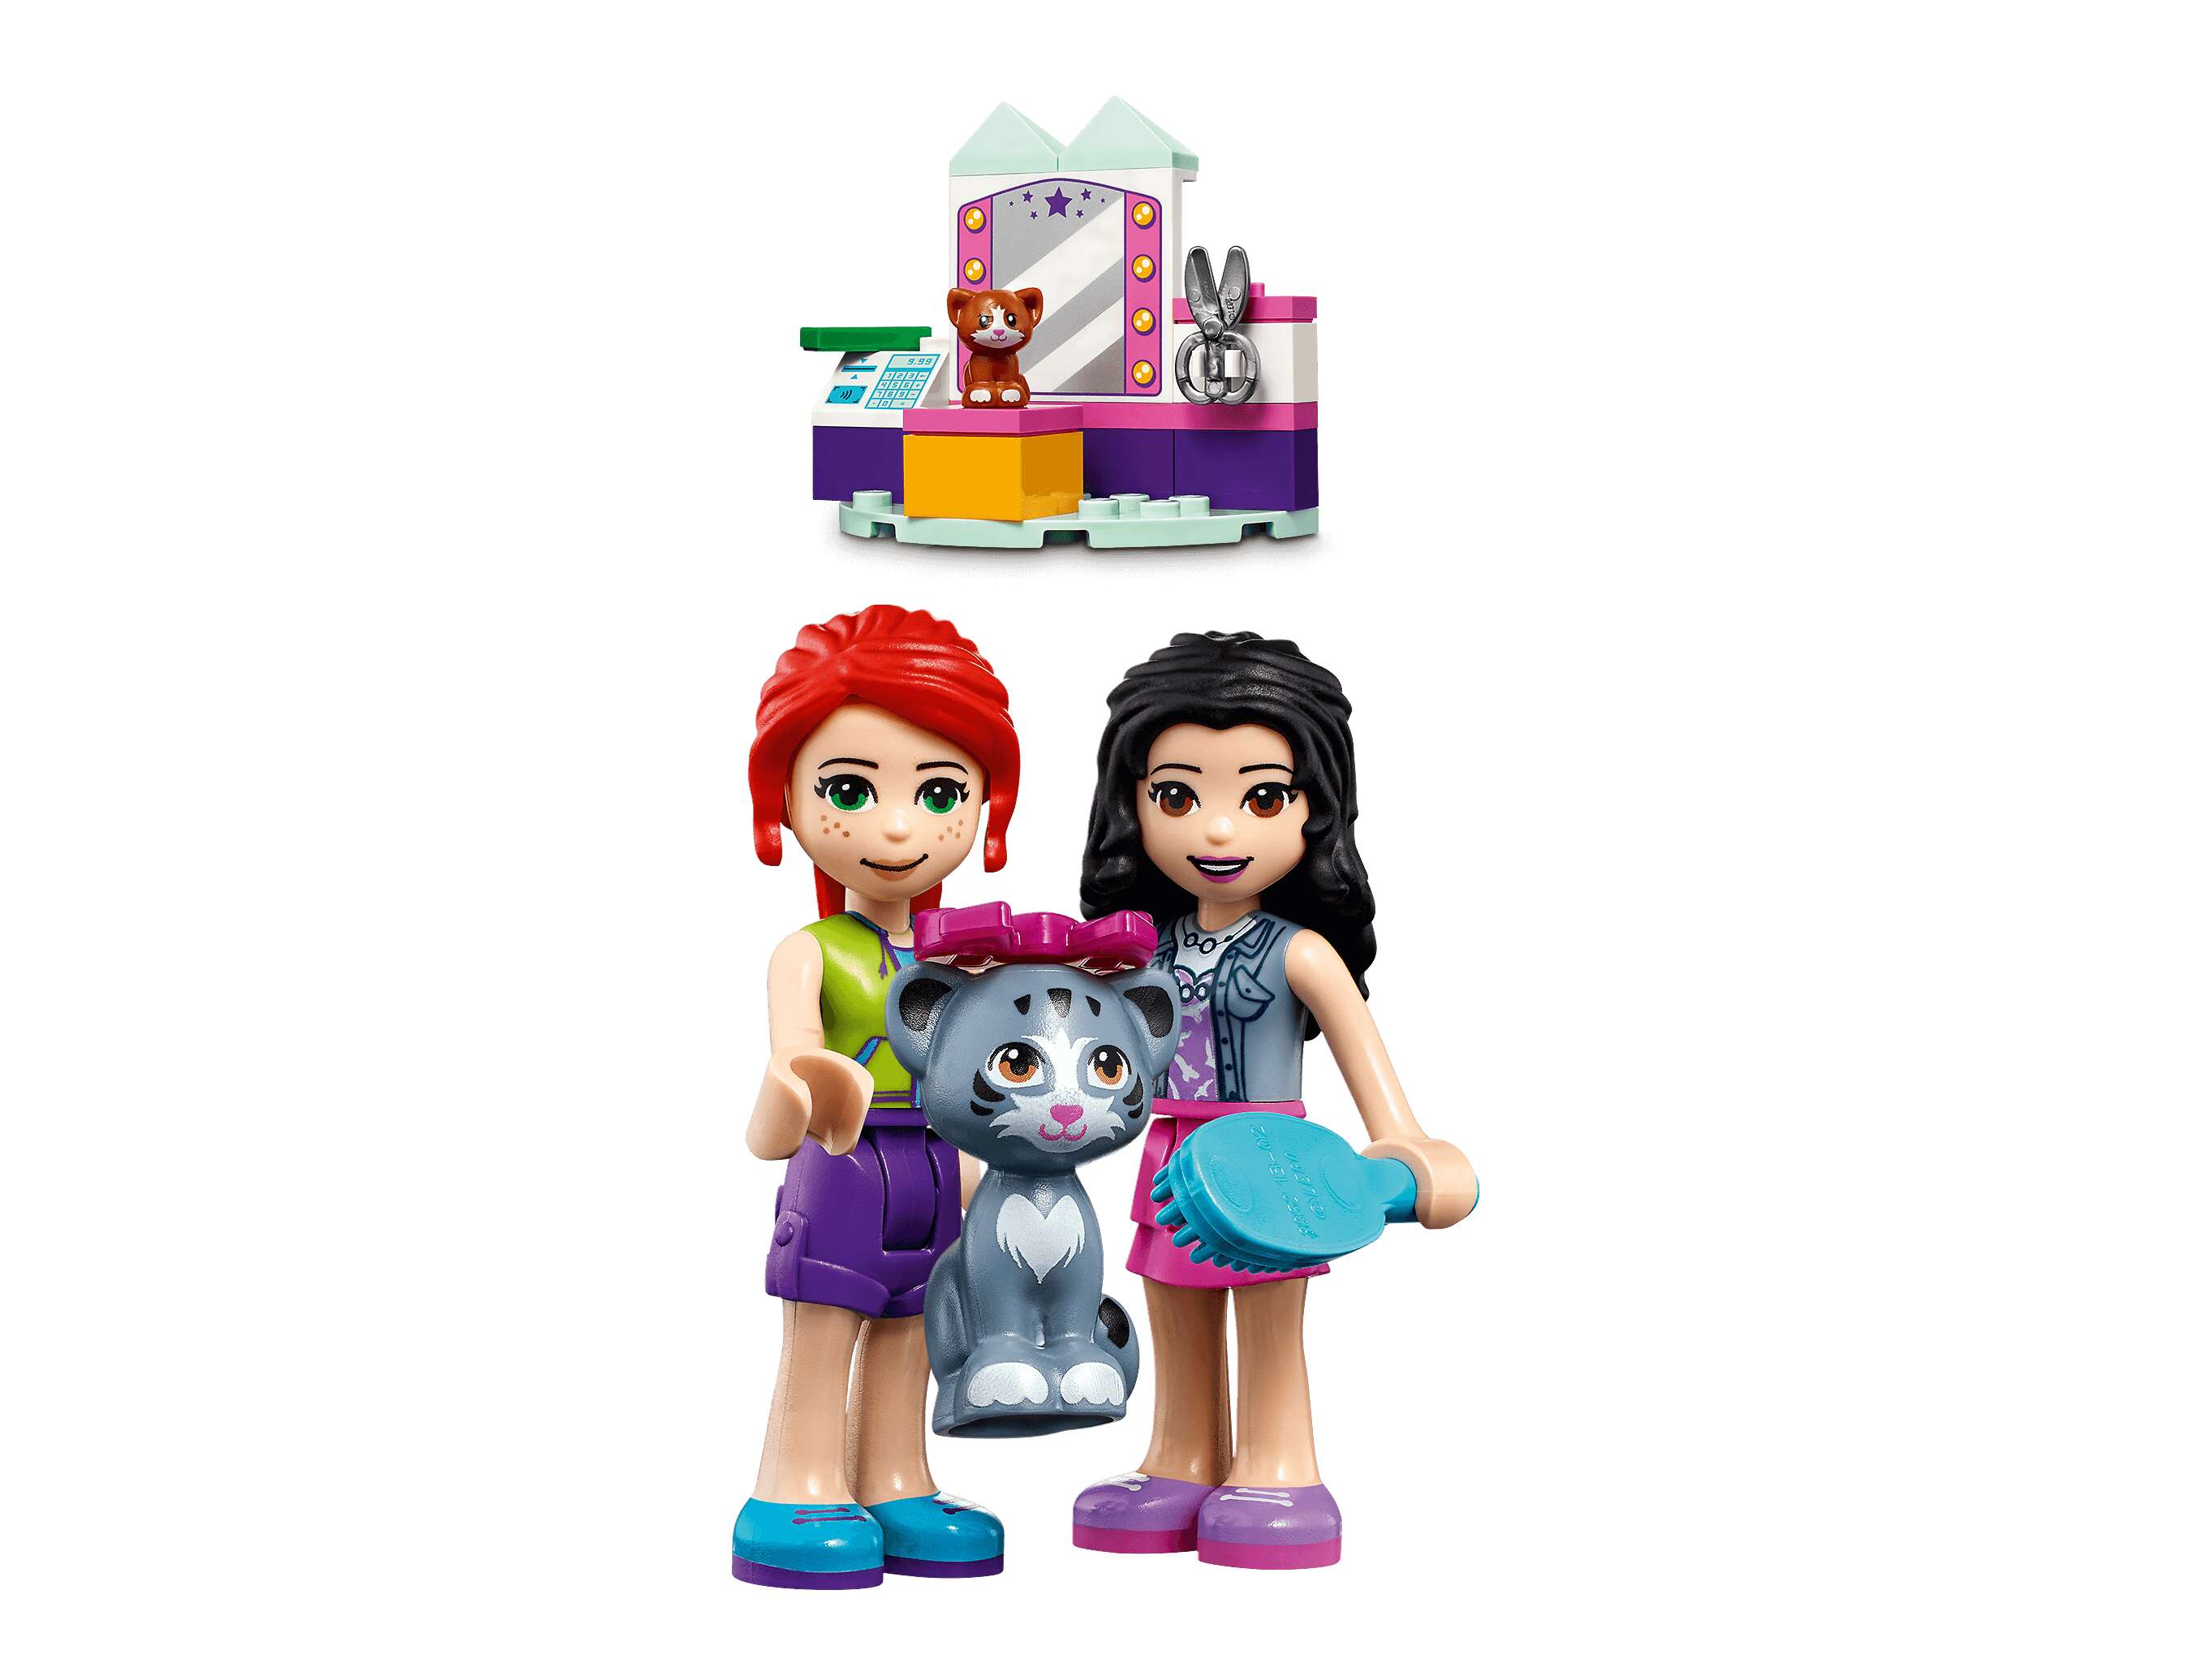 LEGO 41439 Friends Mobiler Katzensalon, 2 Minifiguren, 2 Katzen